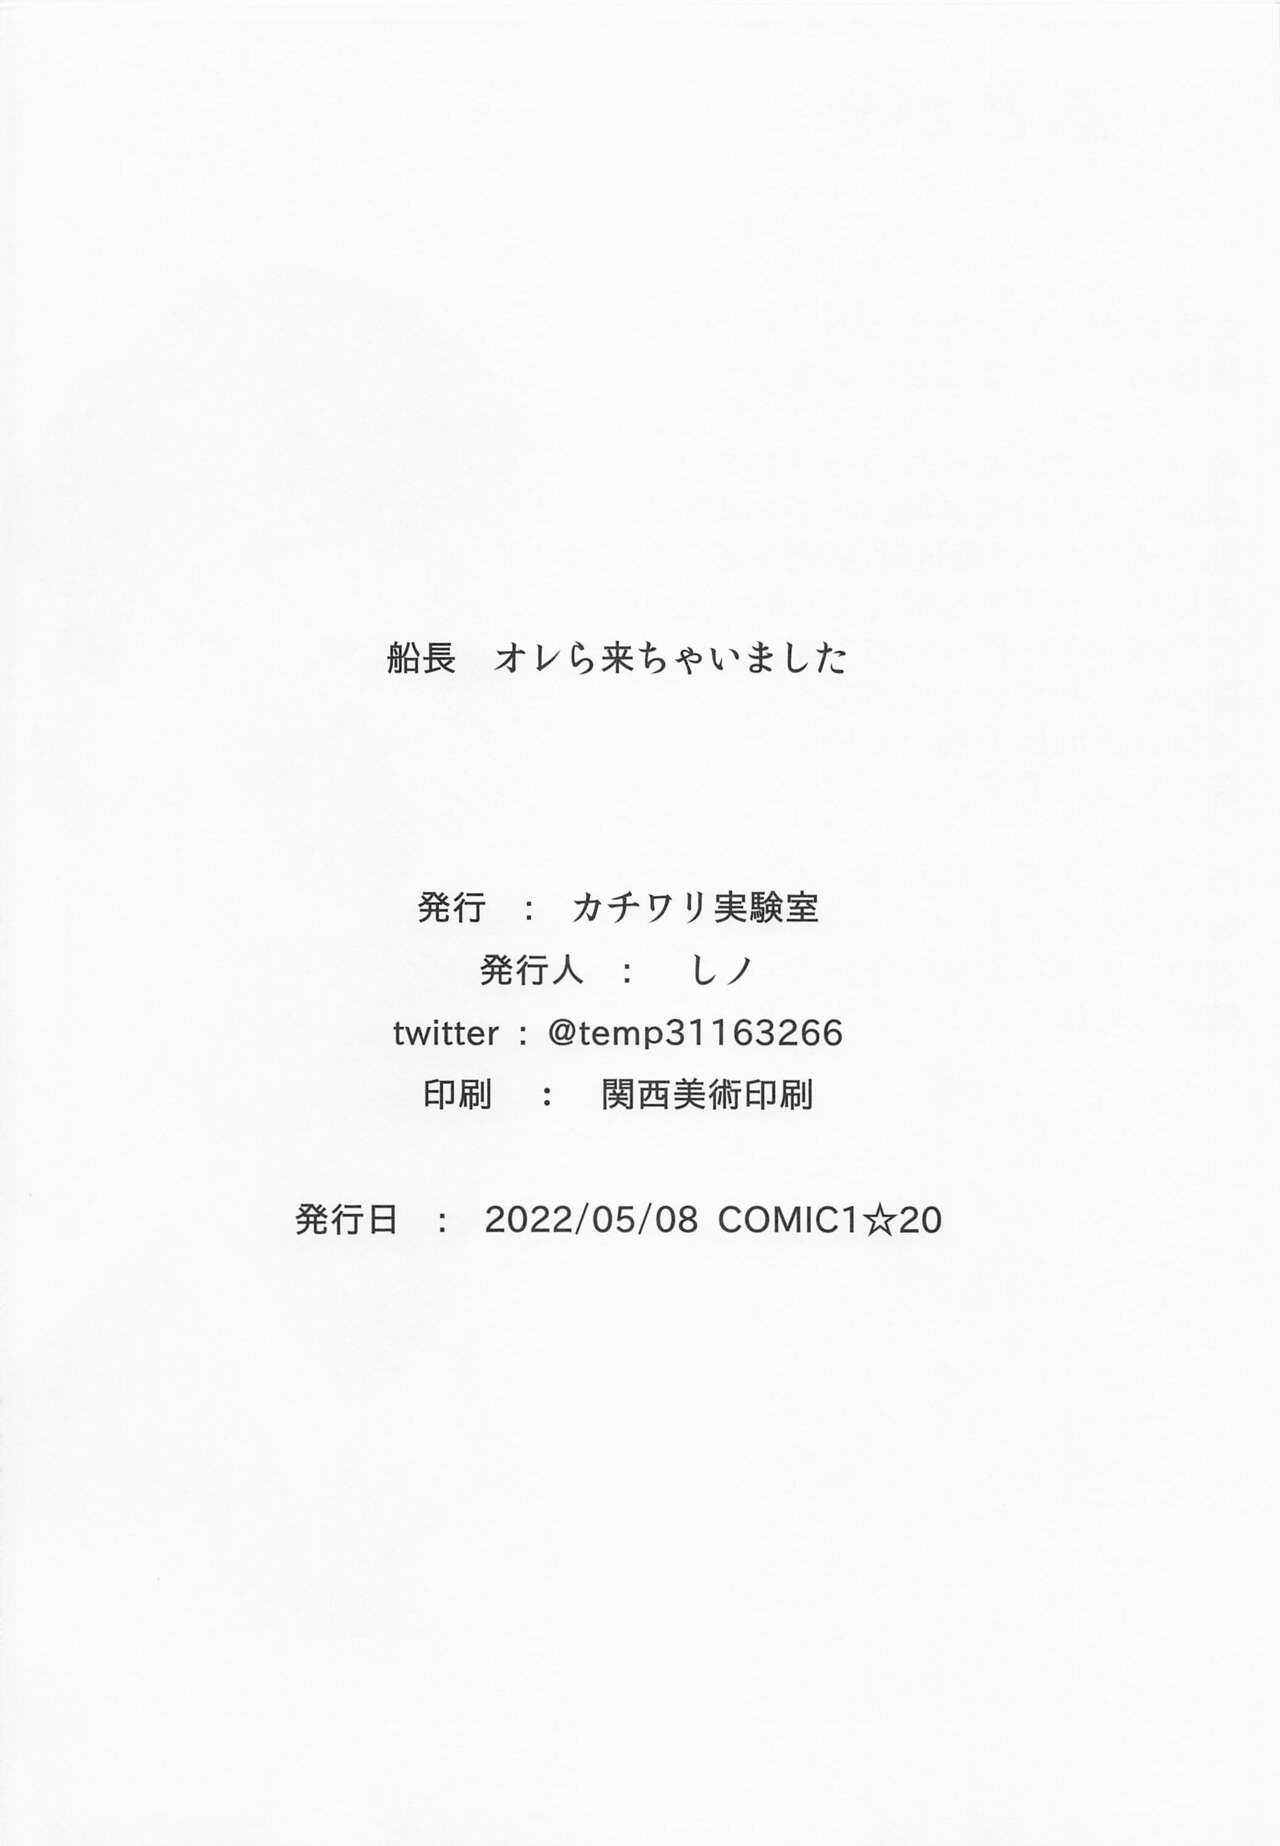 (COMIC1☆20) [カチワリ実験室 (しノ)] 船長 オレら来ちゃいました (宝鐘マリン)